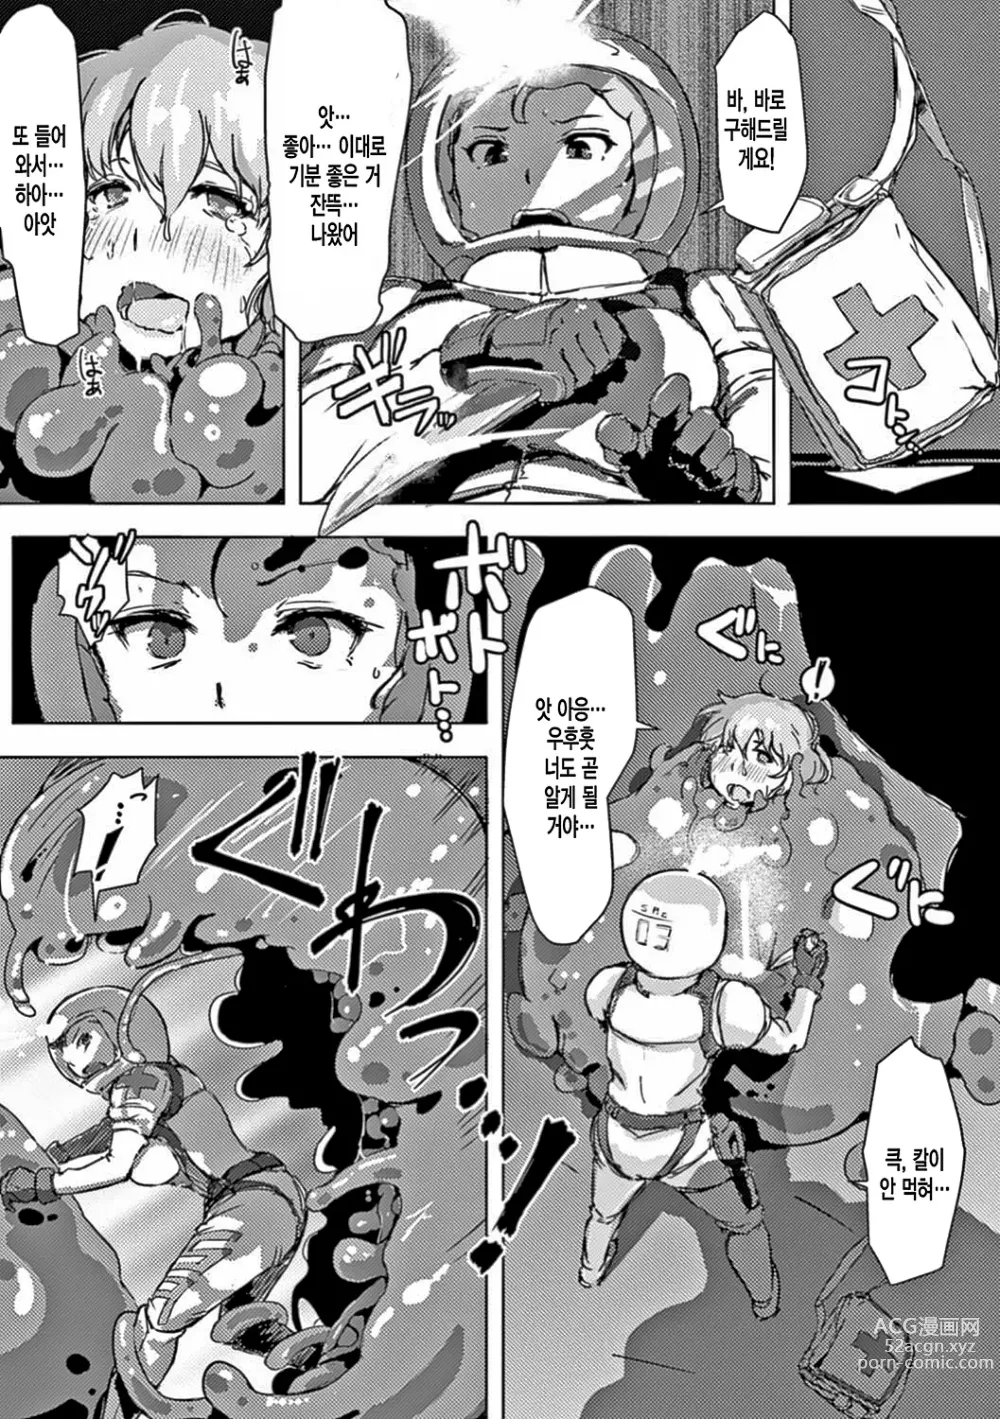 Page 159 of manga 더러운 정자로 자궁이 빵빵!